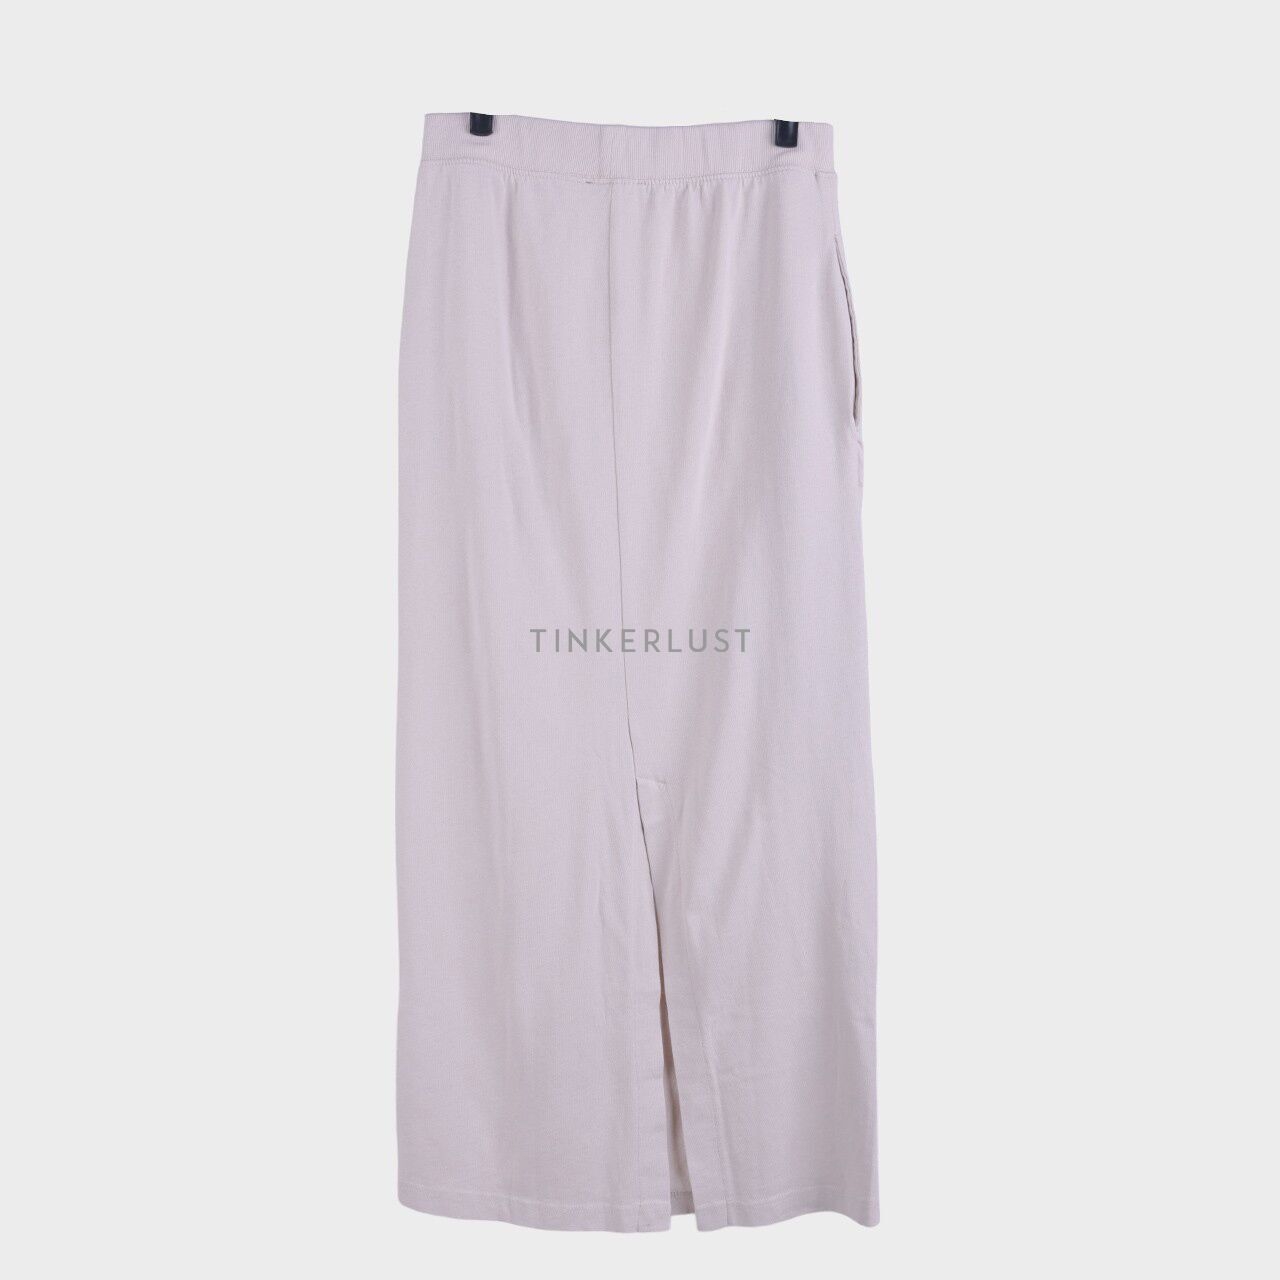 Zara Light Beige Slit Maxi Skirt